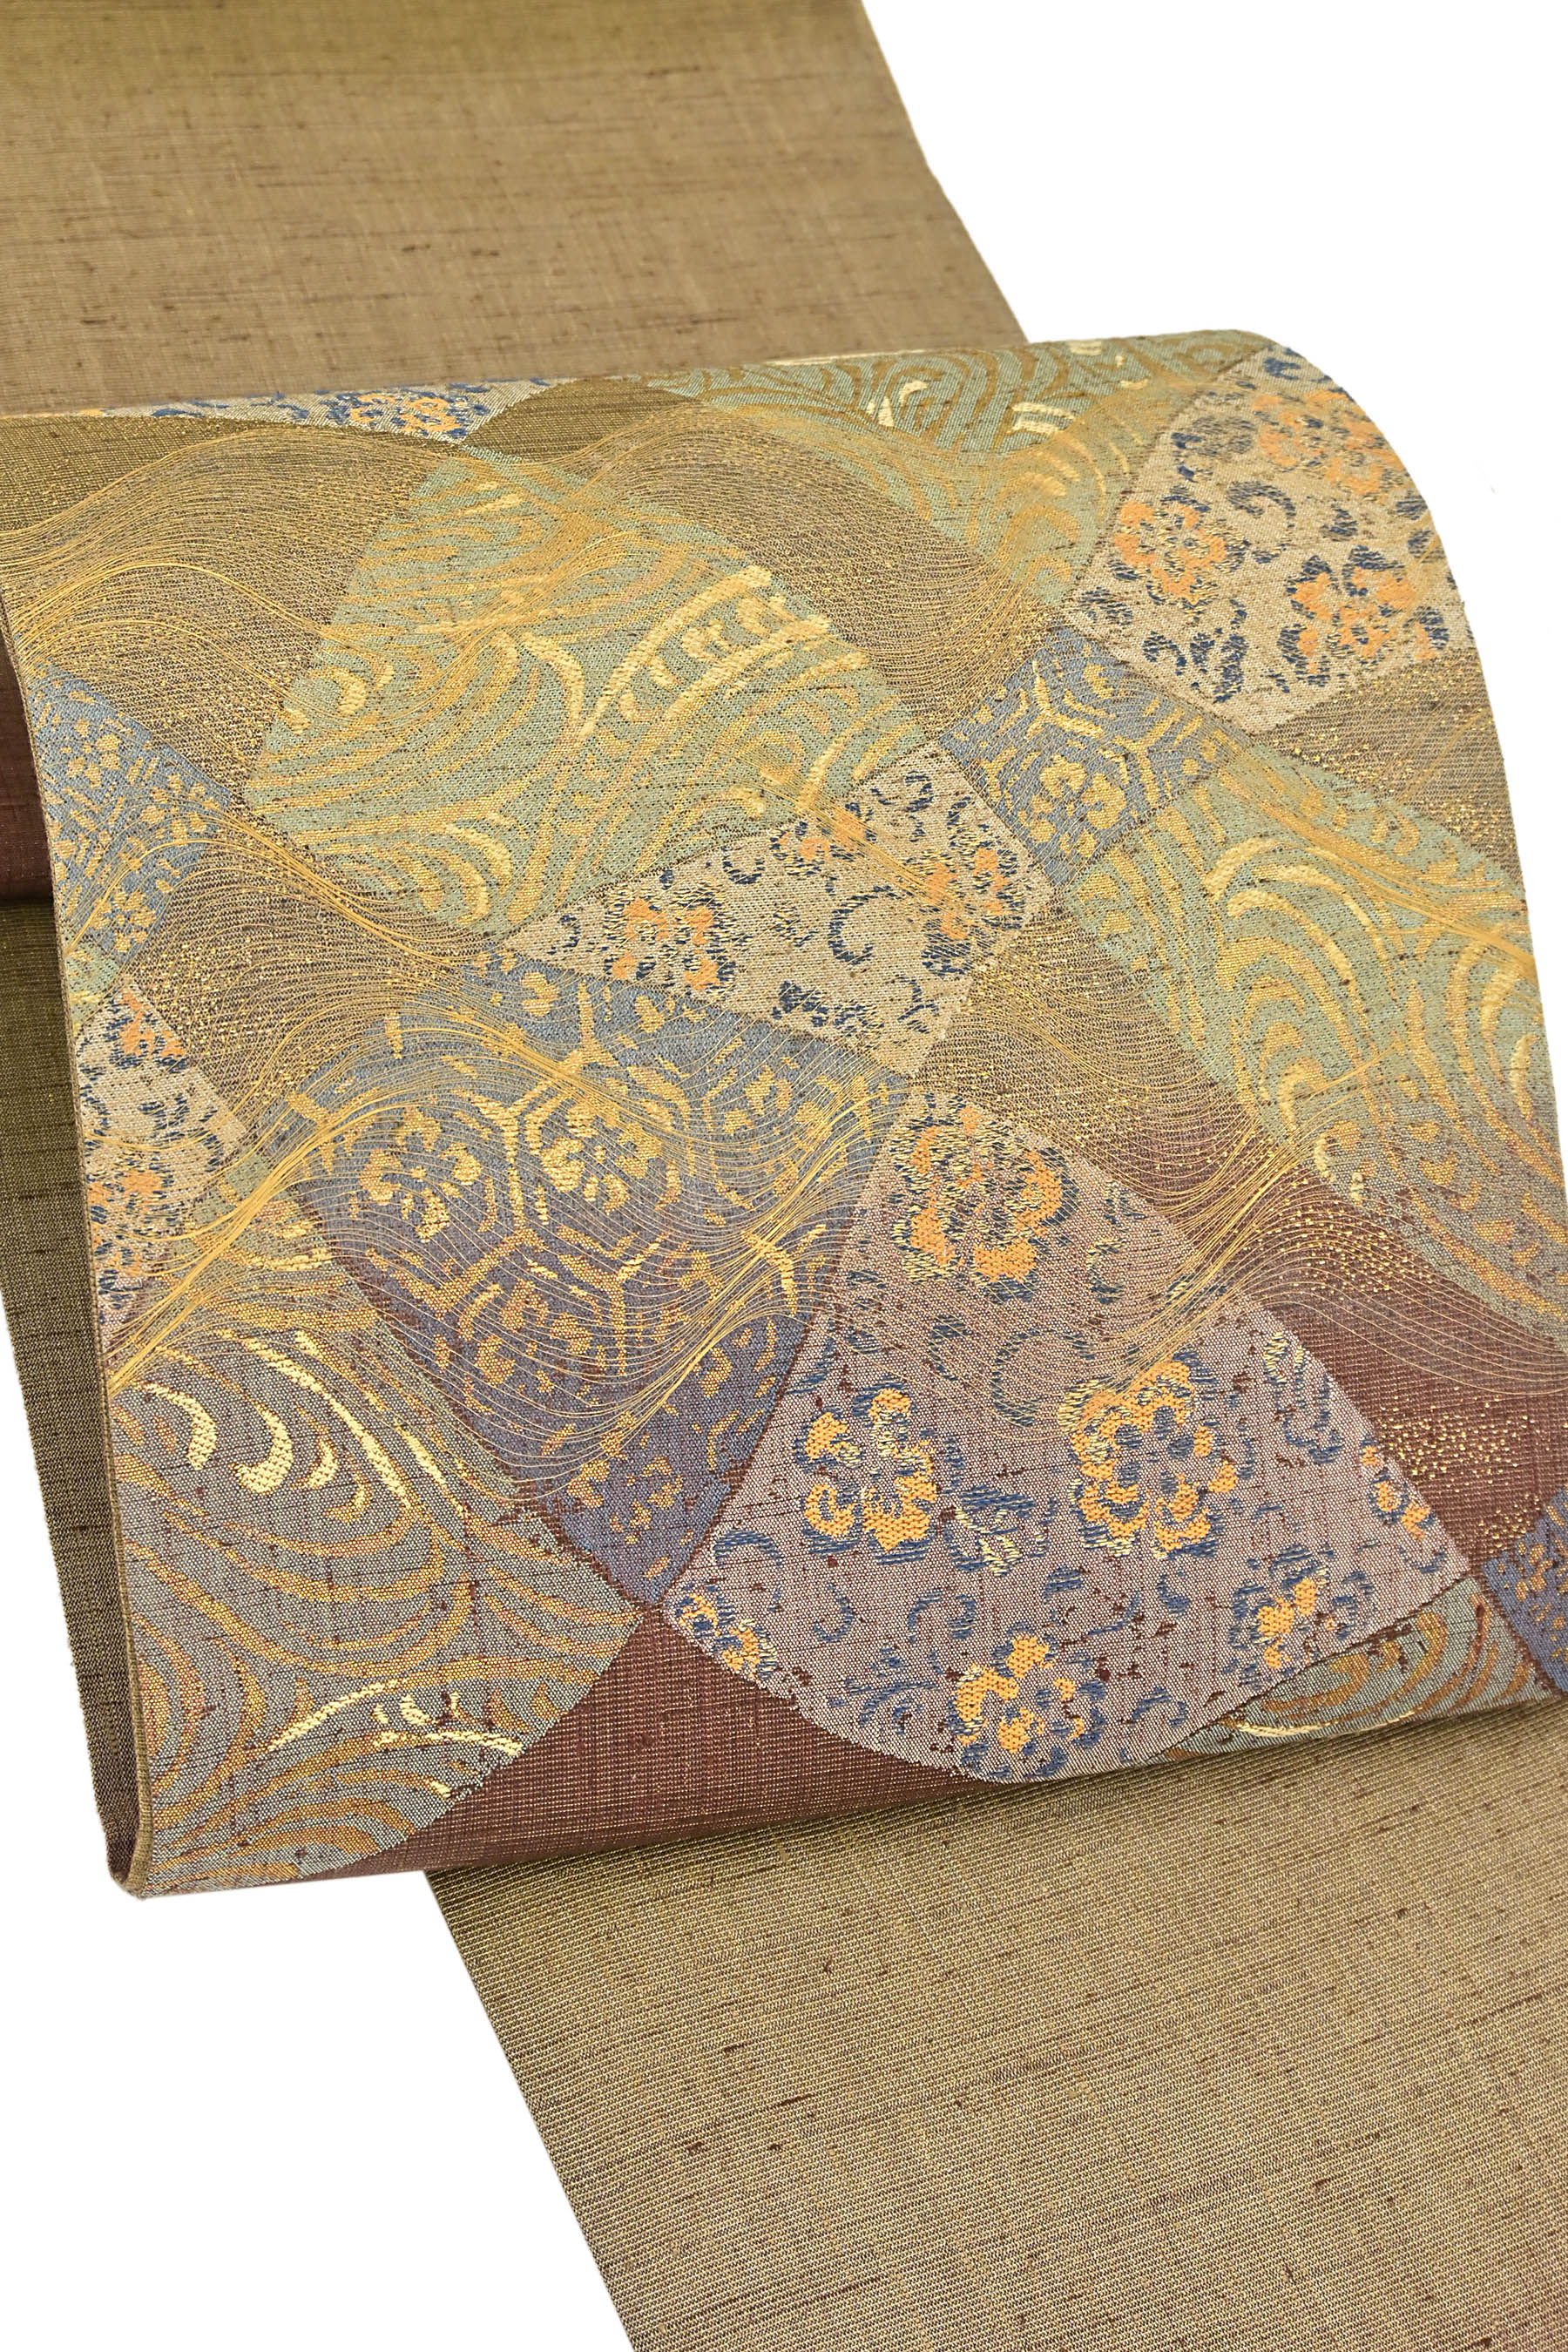 作家や落款の有無of-653 美品 逸品  しょうざん 絹漉貴 きぬすき 正絹 袋帯